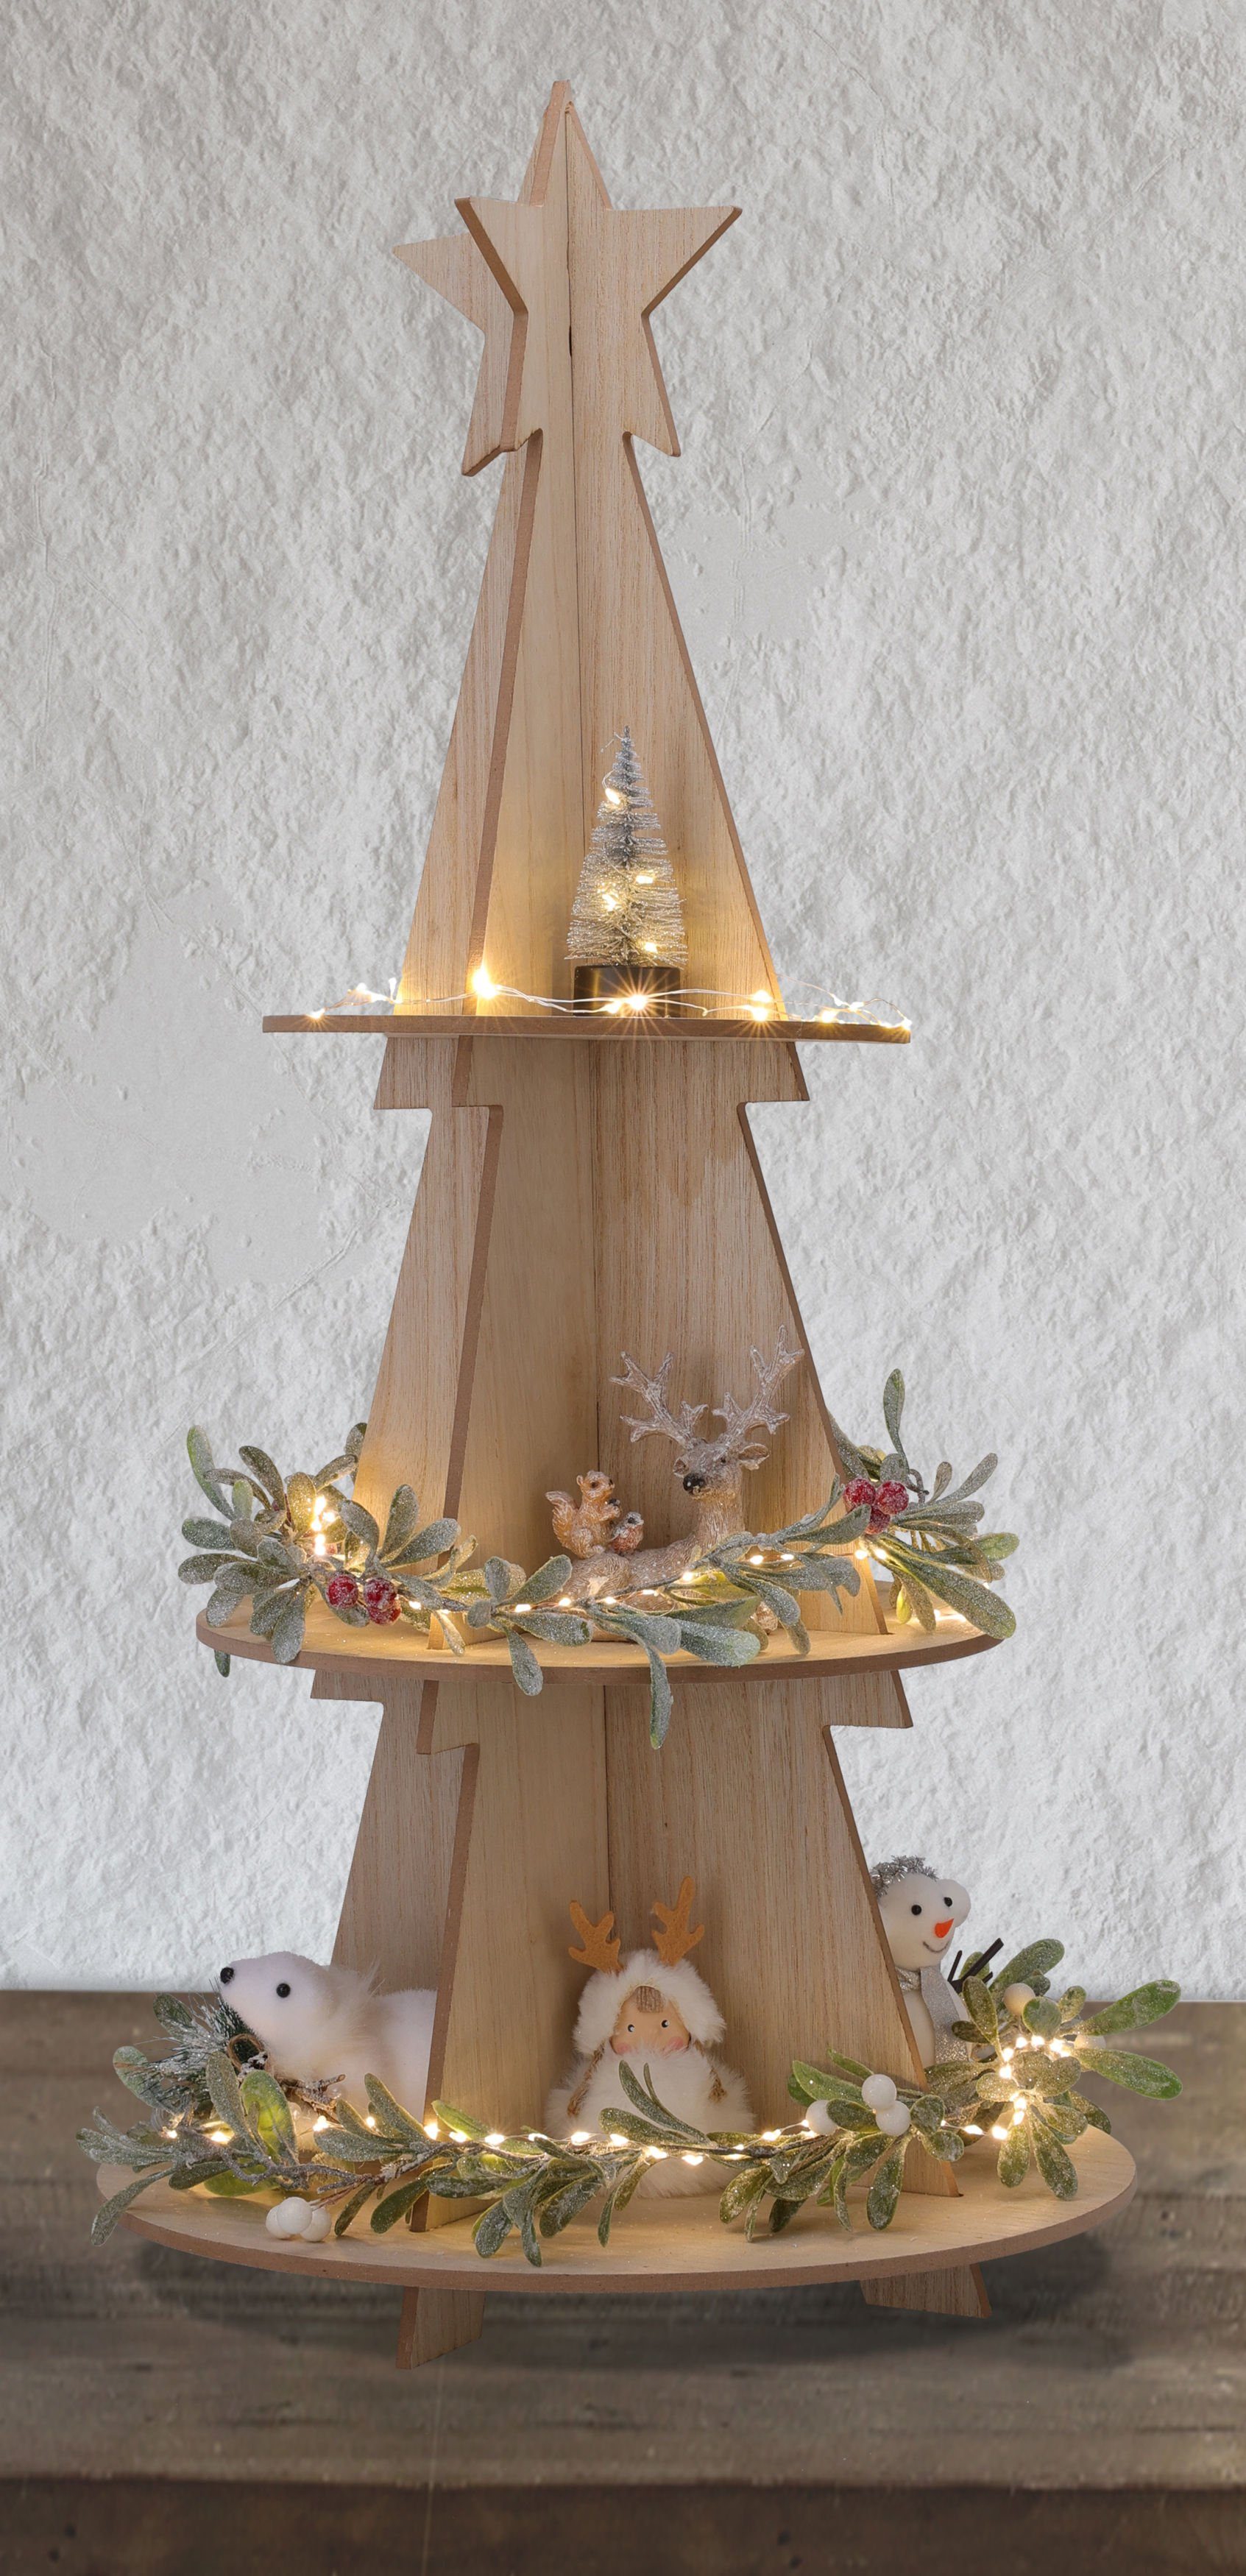 Spetebo Weihnachtspyramide XXL Holz mit 60cm 3 Weihnachts Spitze Pyramide Weihnachtsbaum Deko Etagen, Stern mit Etagere